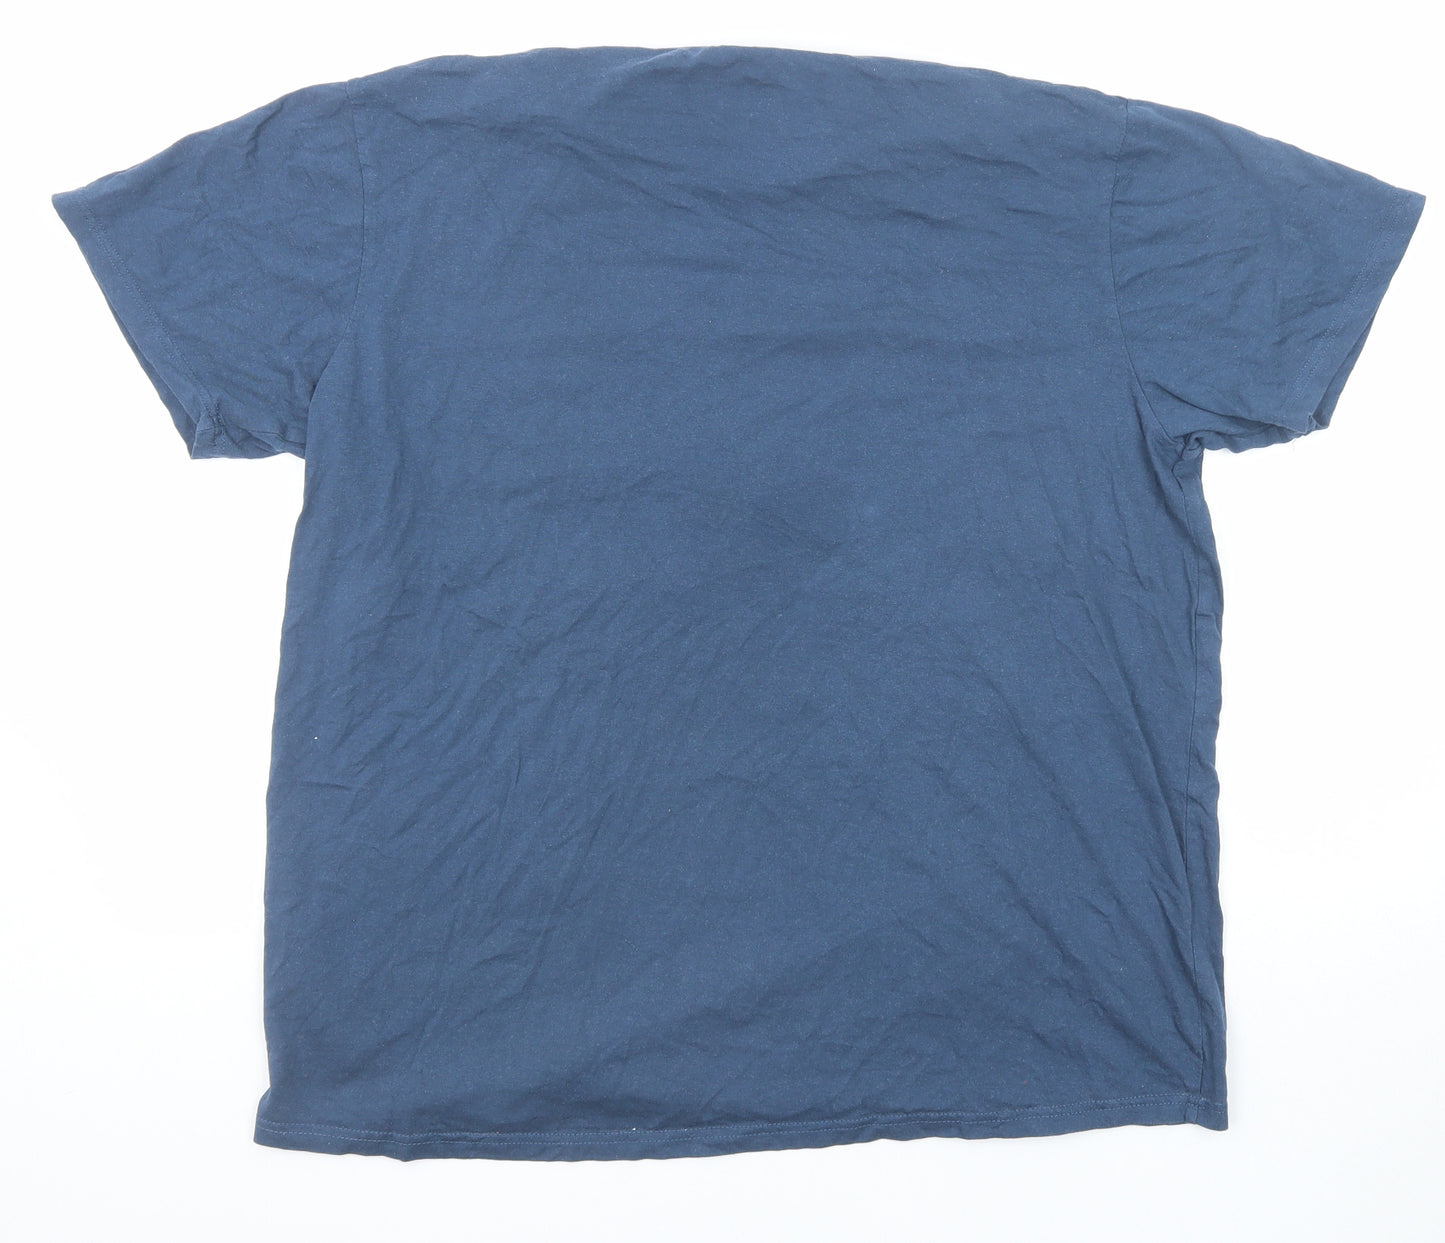 Sth Shore Mens Blue Cotton T-Shirt Size XL Round Neck - LA Motors Co